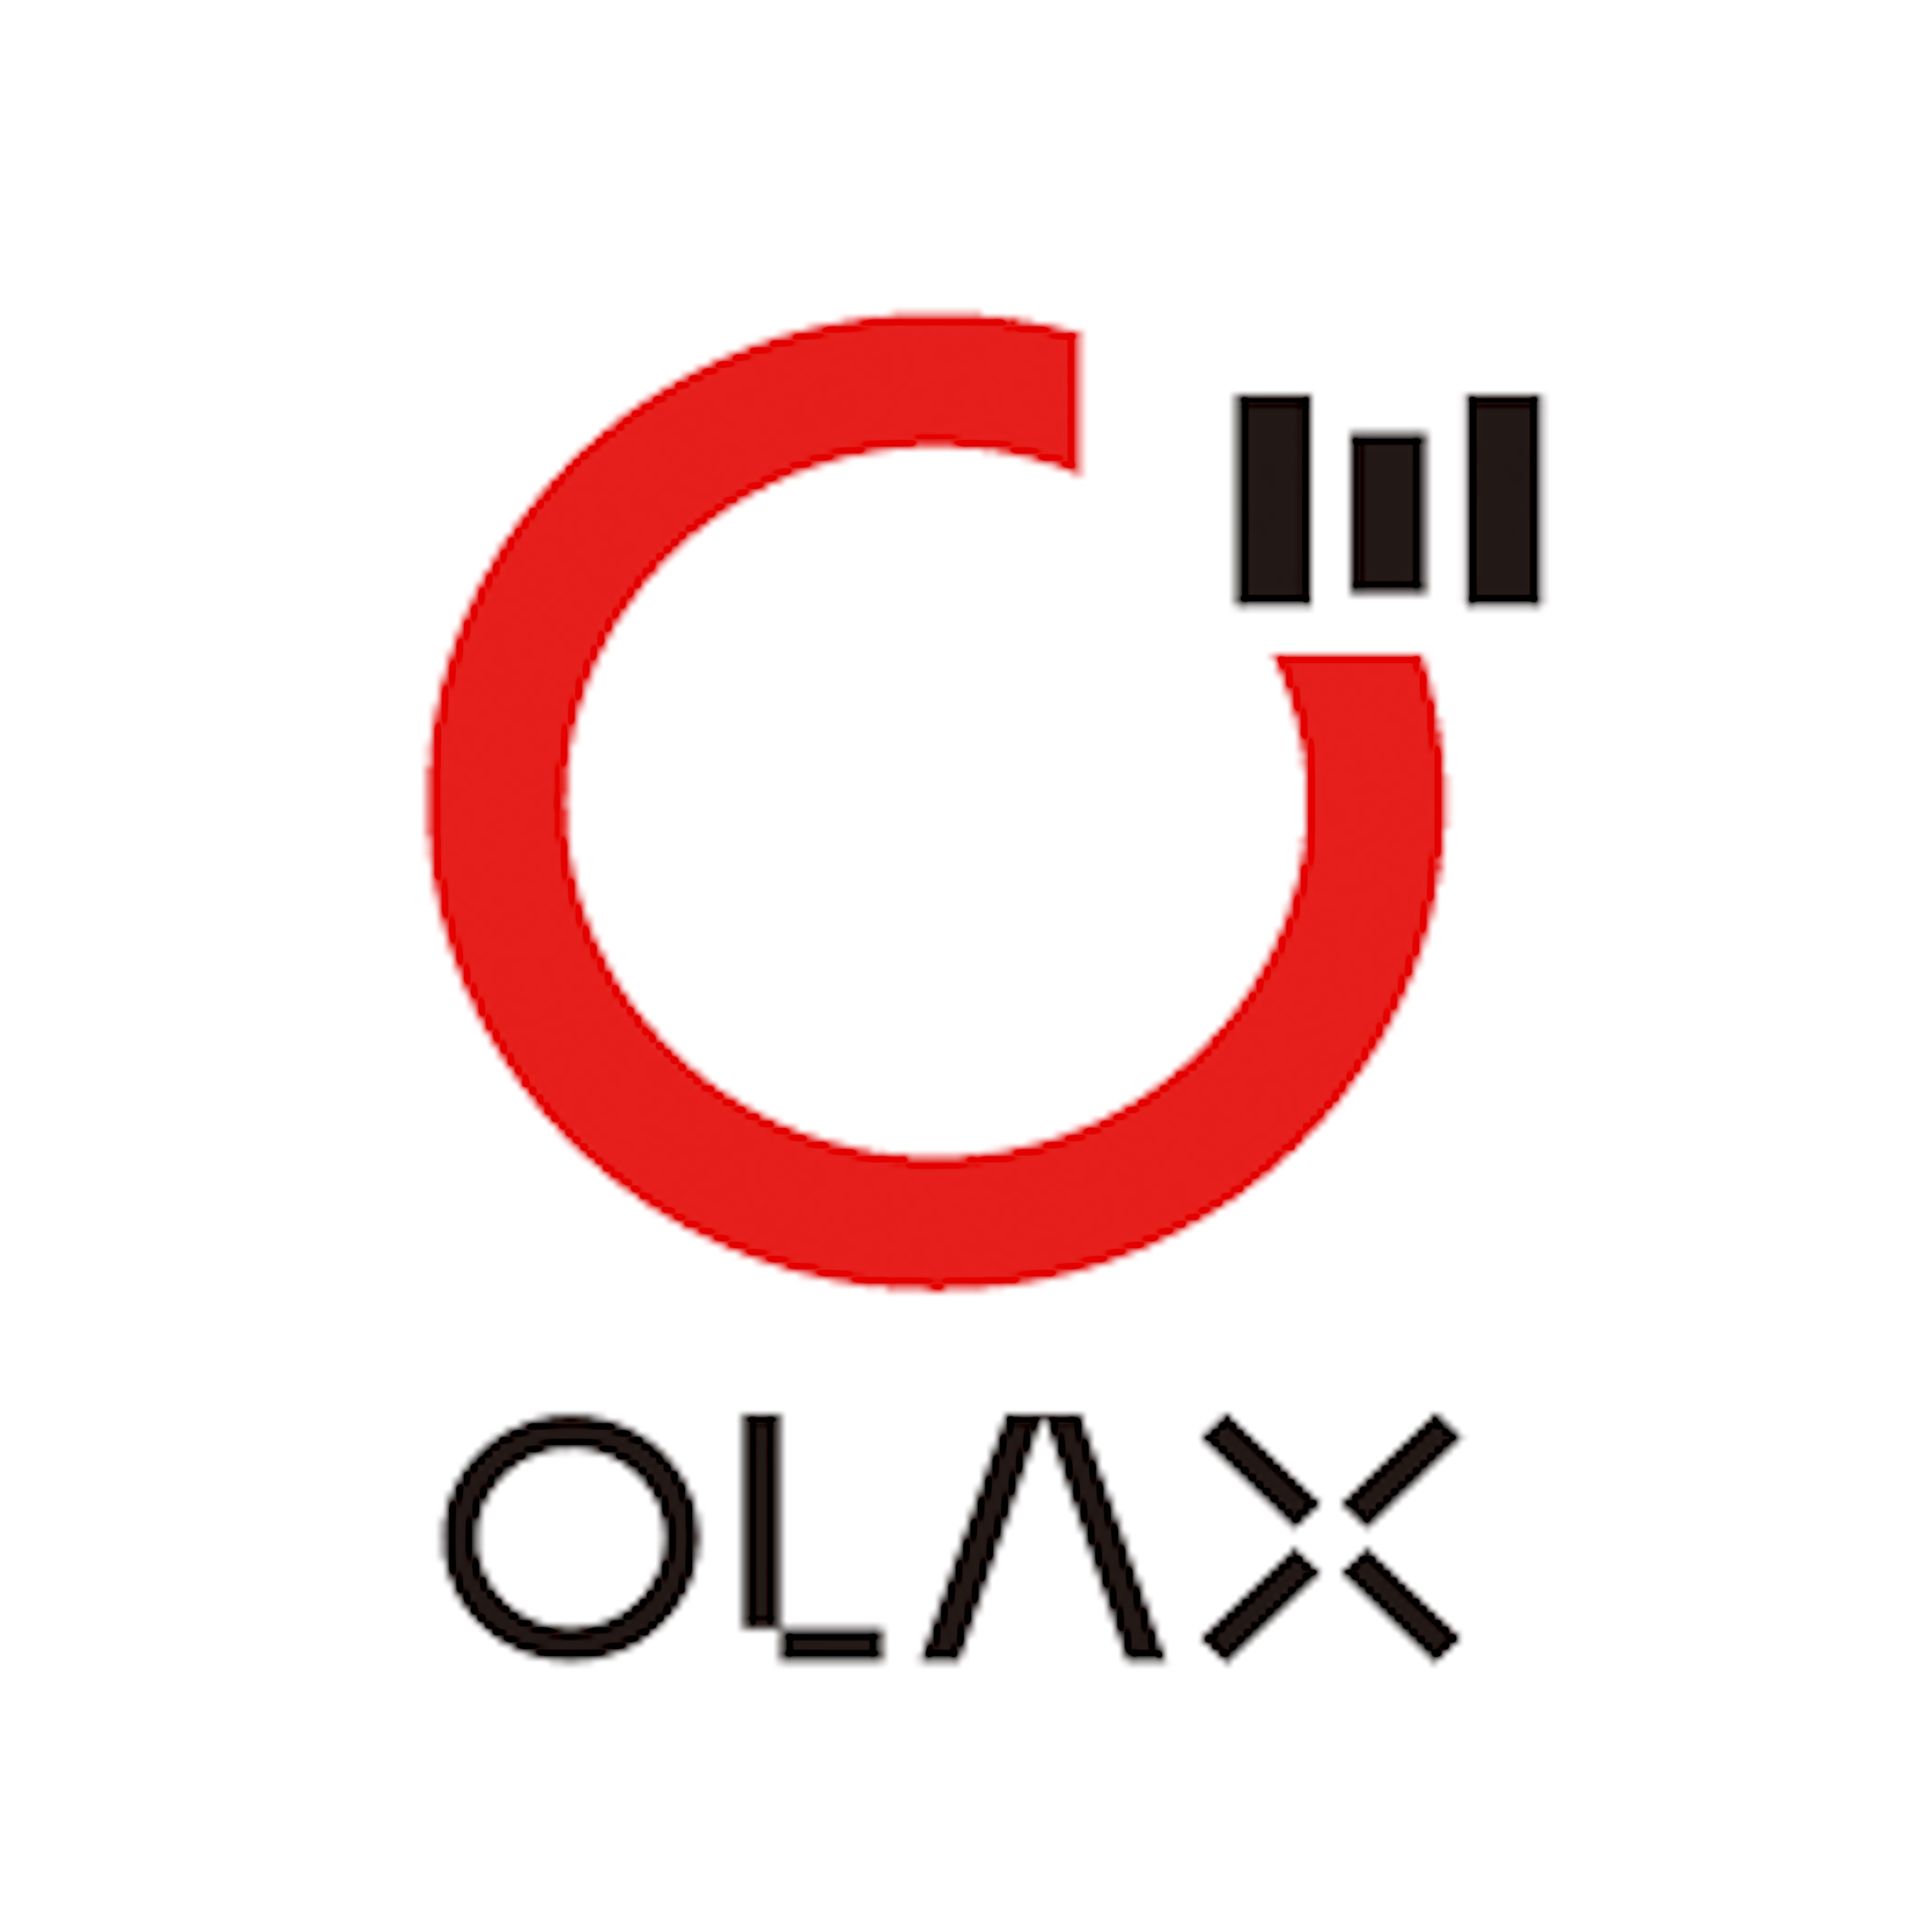 Olax